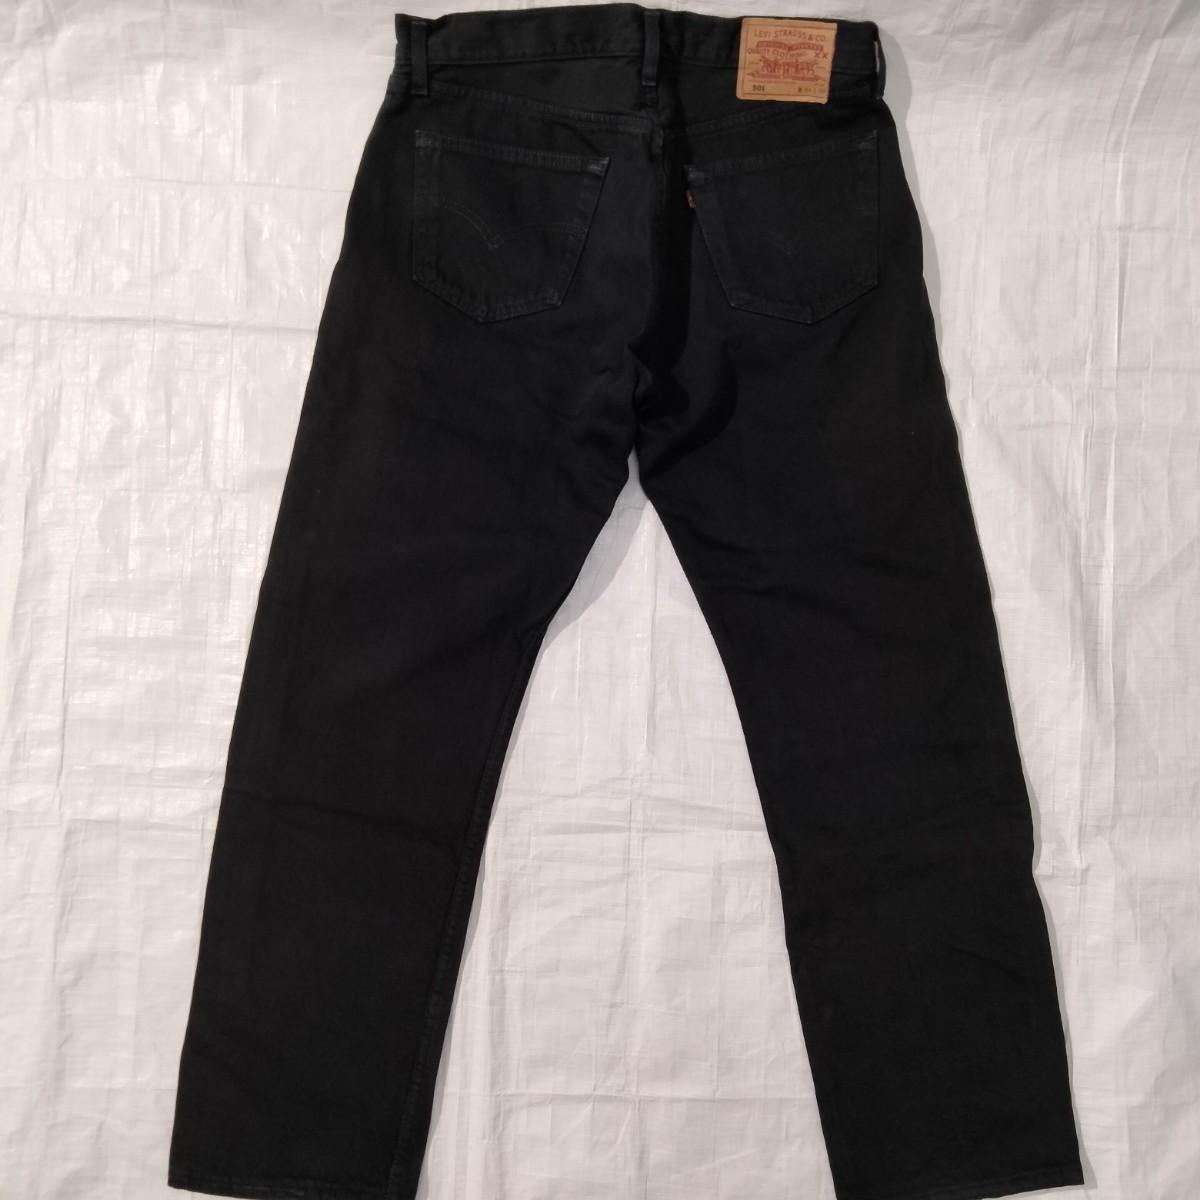 リーバイス 501 0165 Levi's black denim jeans ブラック デニム ジーンズ UK 英国製 34x30 スーパーブラック ジェットブラック 後染 黒 の画像3